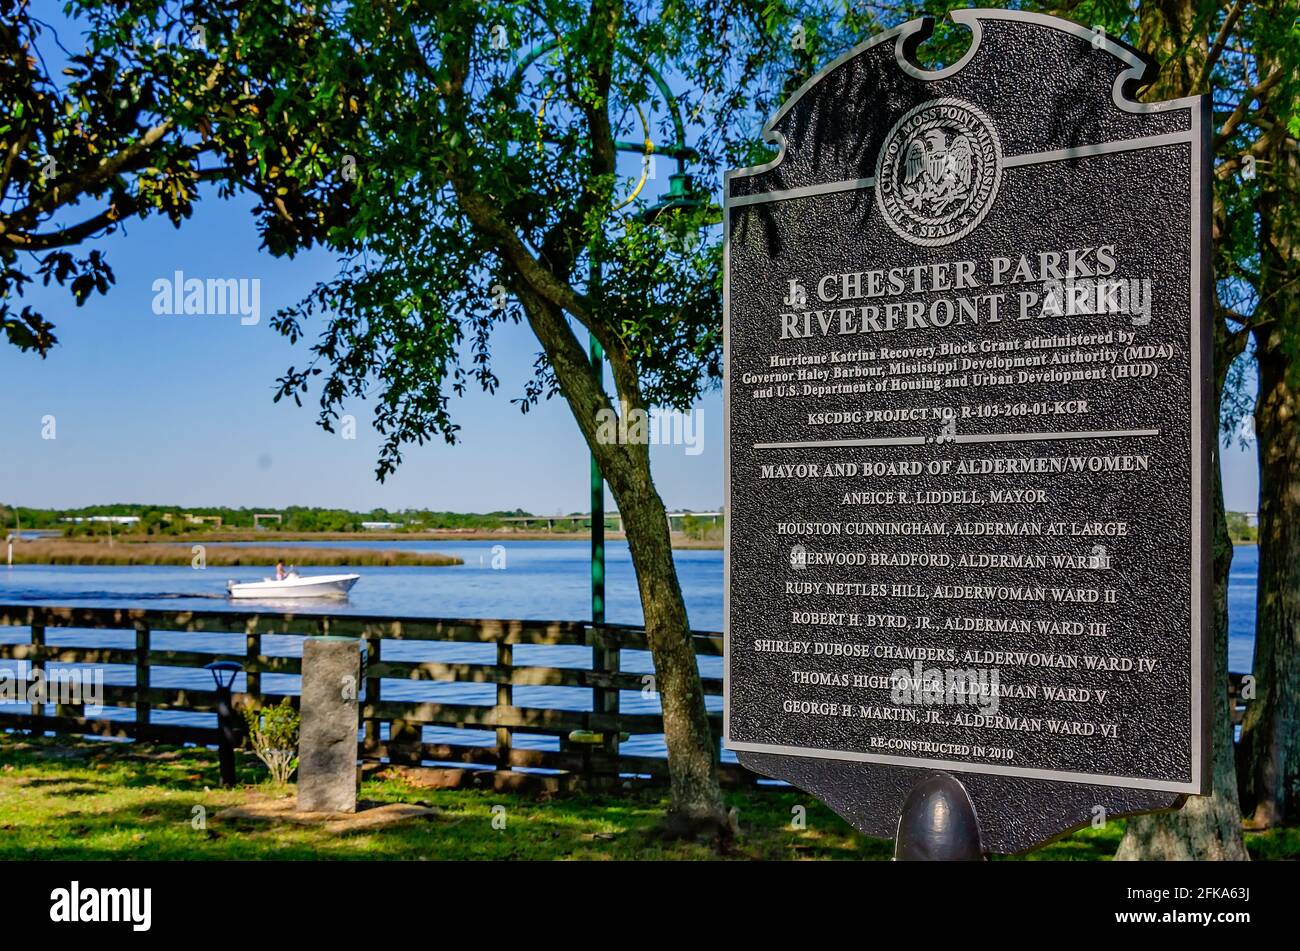 J. Chester Parks Riverfront Park está representado el 29 de abril de 2021 en Moss Point, Mississippi. El parque se encuentra a orillas del río Escatawpa. Foto de stock